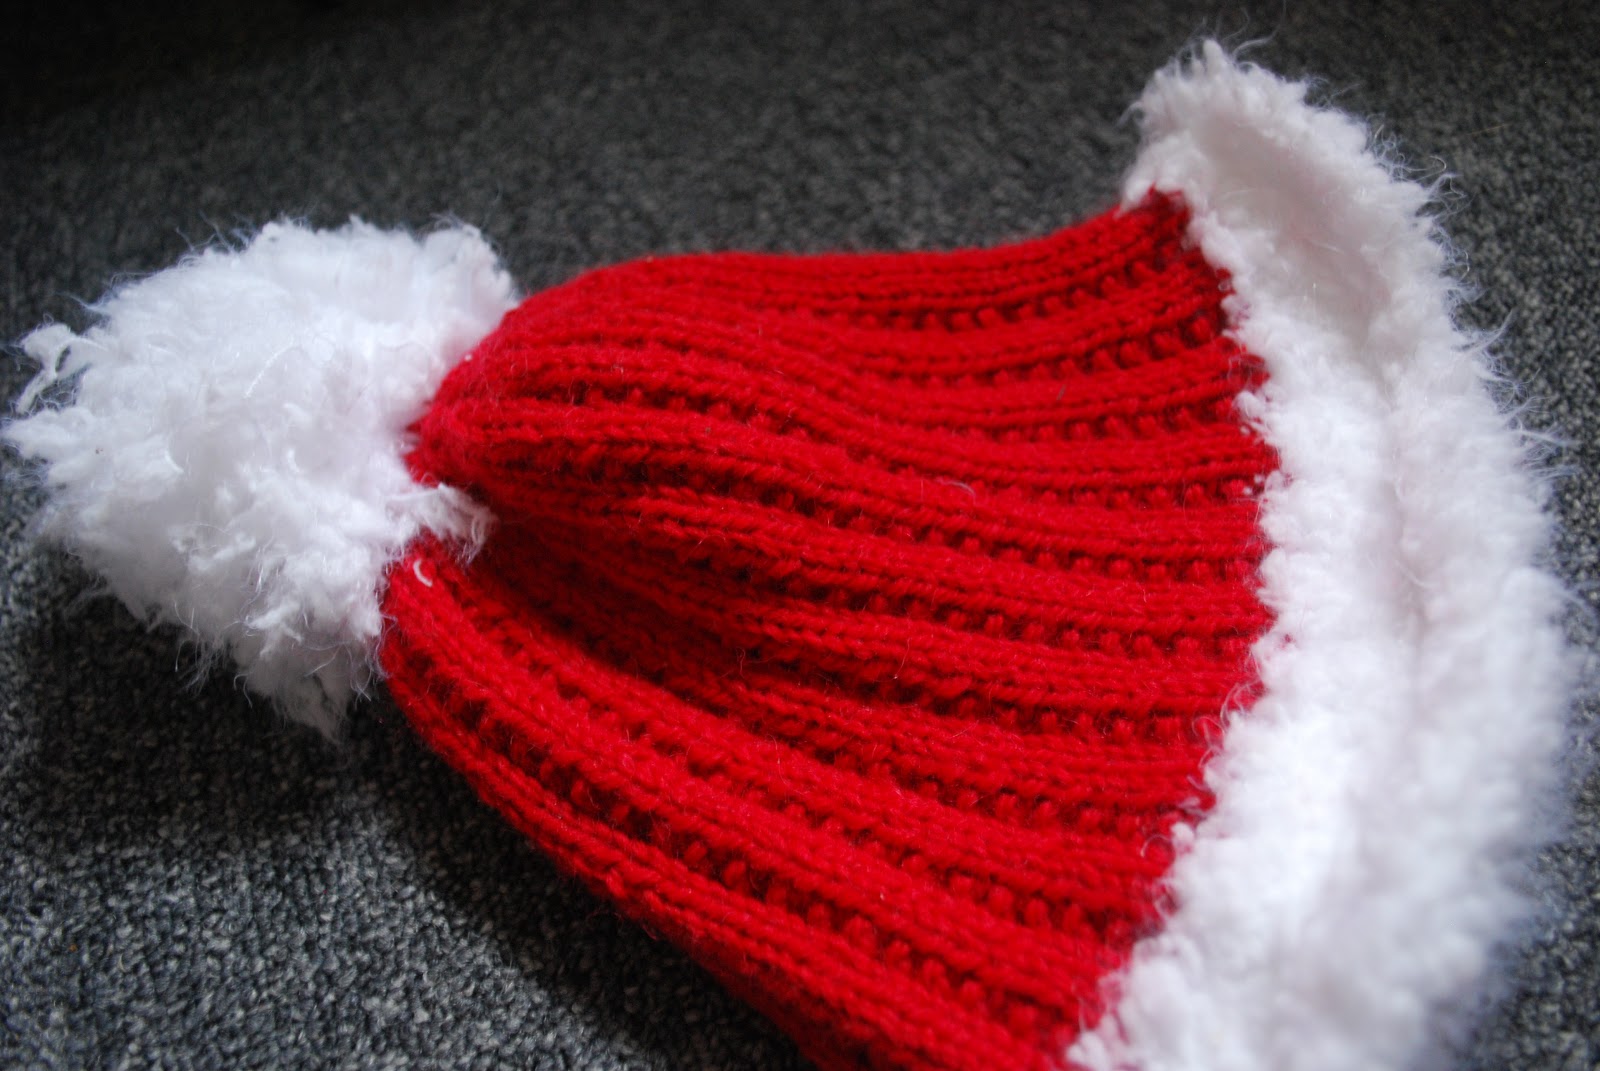 tricoter un bonnet de pere noel